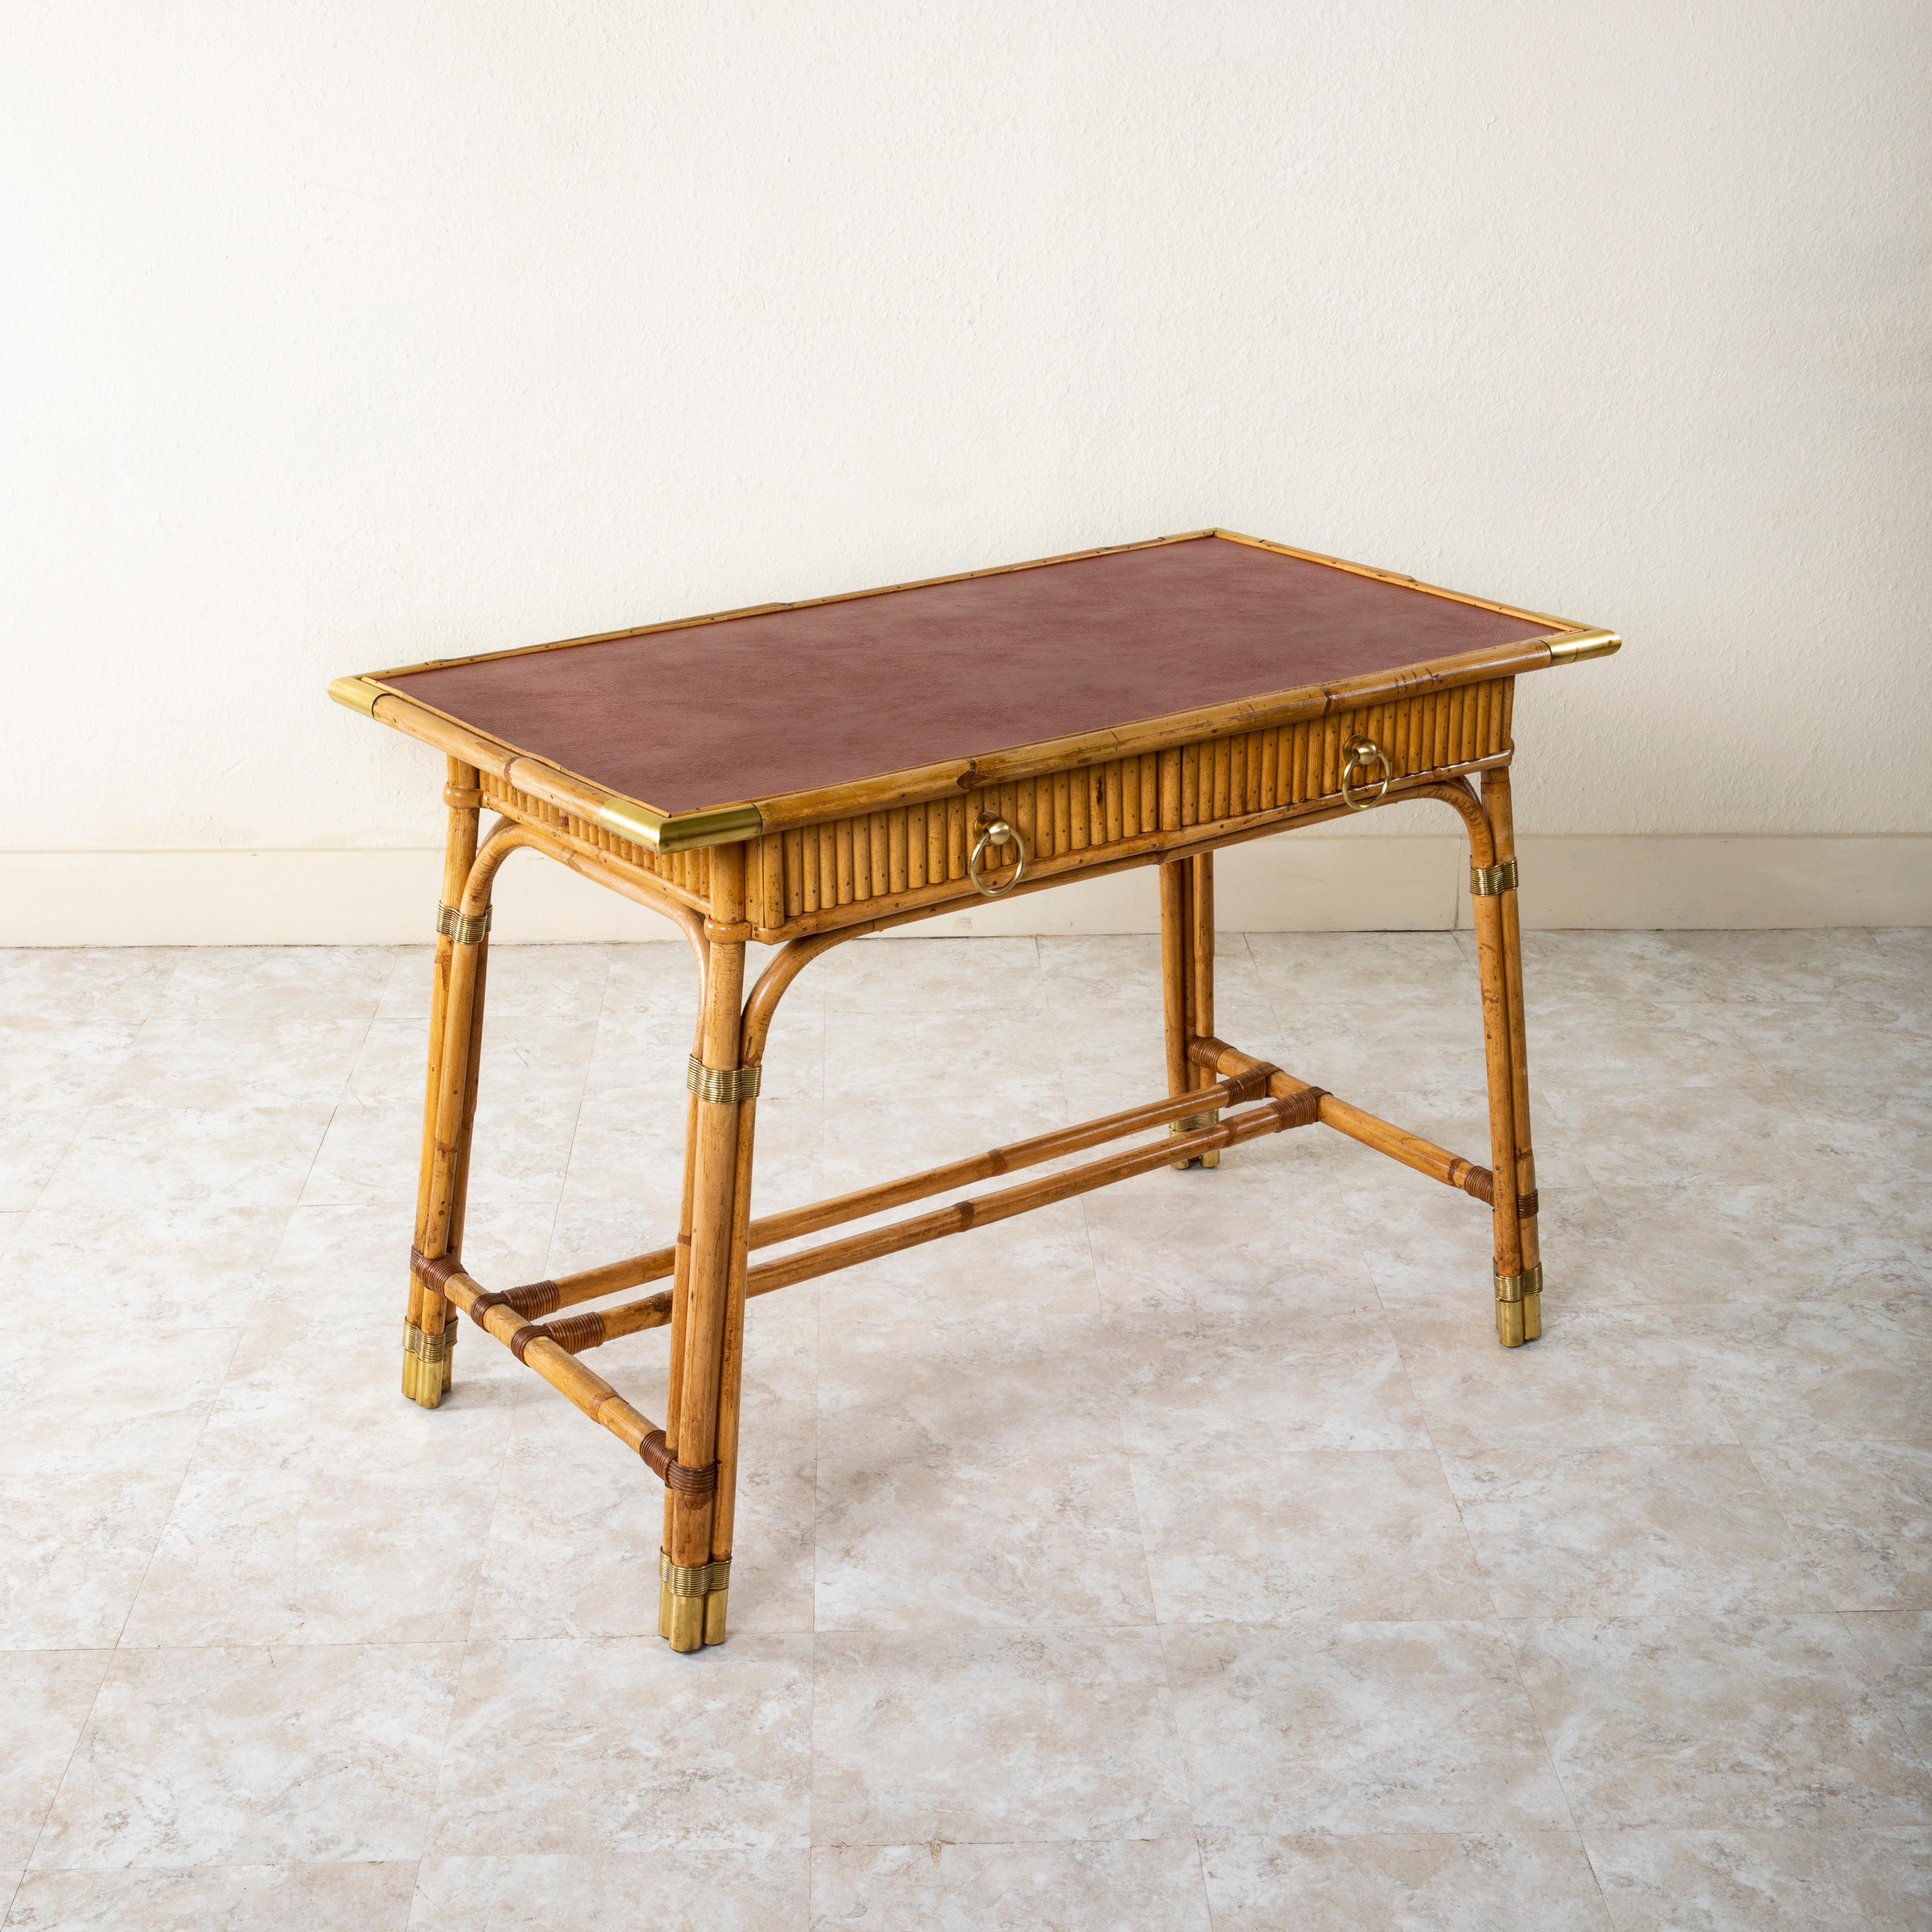 Attribué à Louis Sognot (1892-1970), designer pour la Maison Jansen, ce bureau ou table à écrire français du milieu du XXe siècle est construit en bambou et comporte un plateau en cuir rouge. Les coins autour du plateau et des pieds sont tous